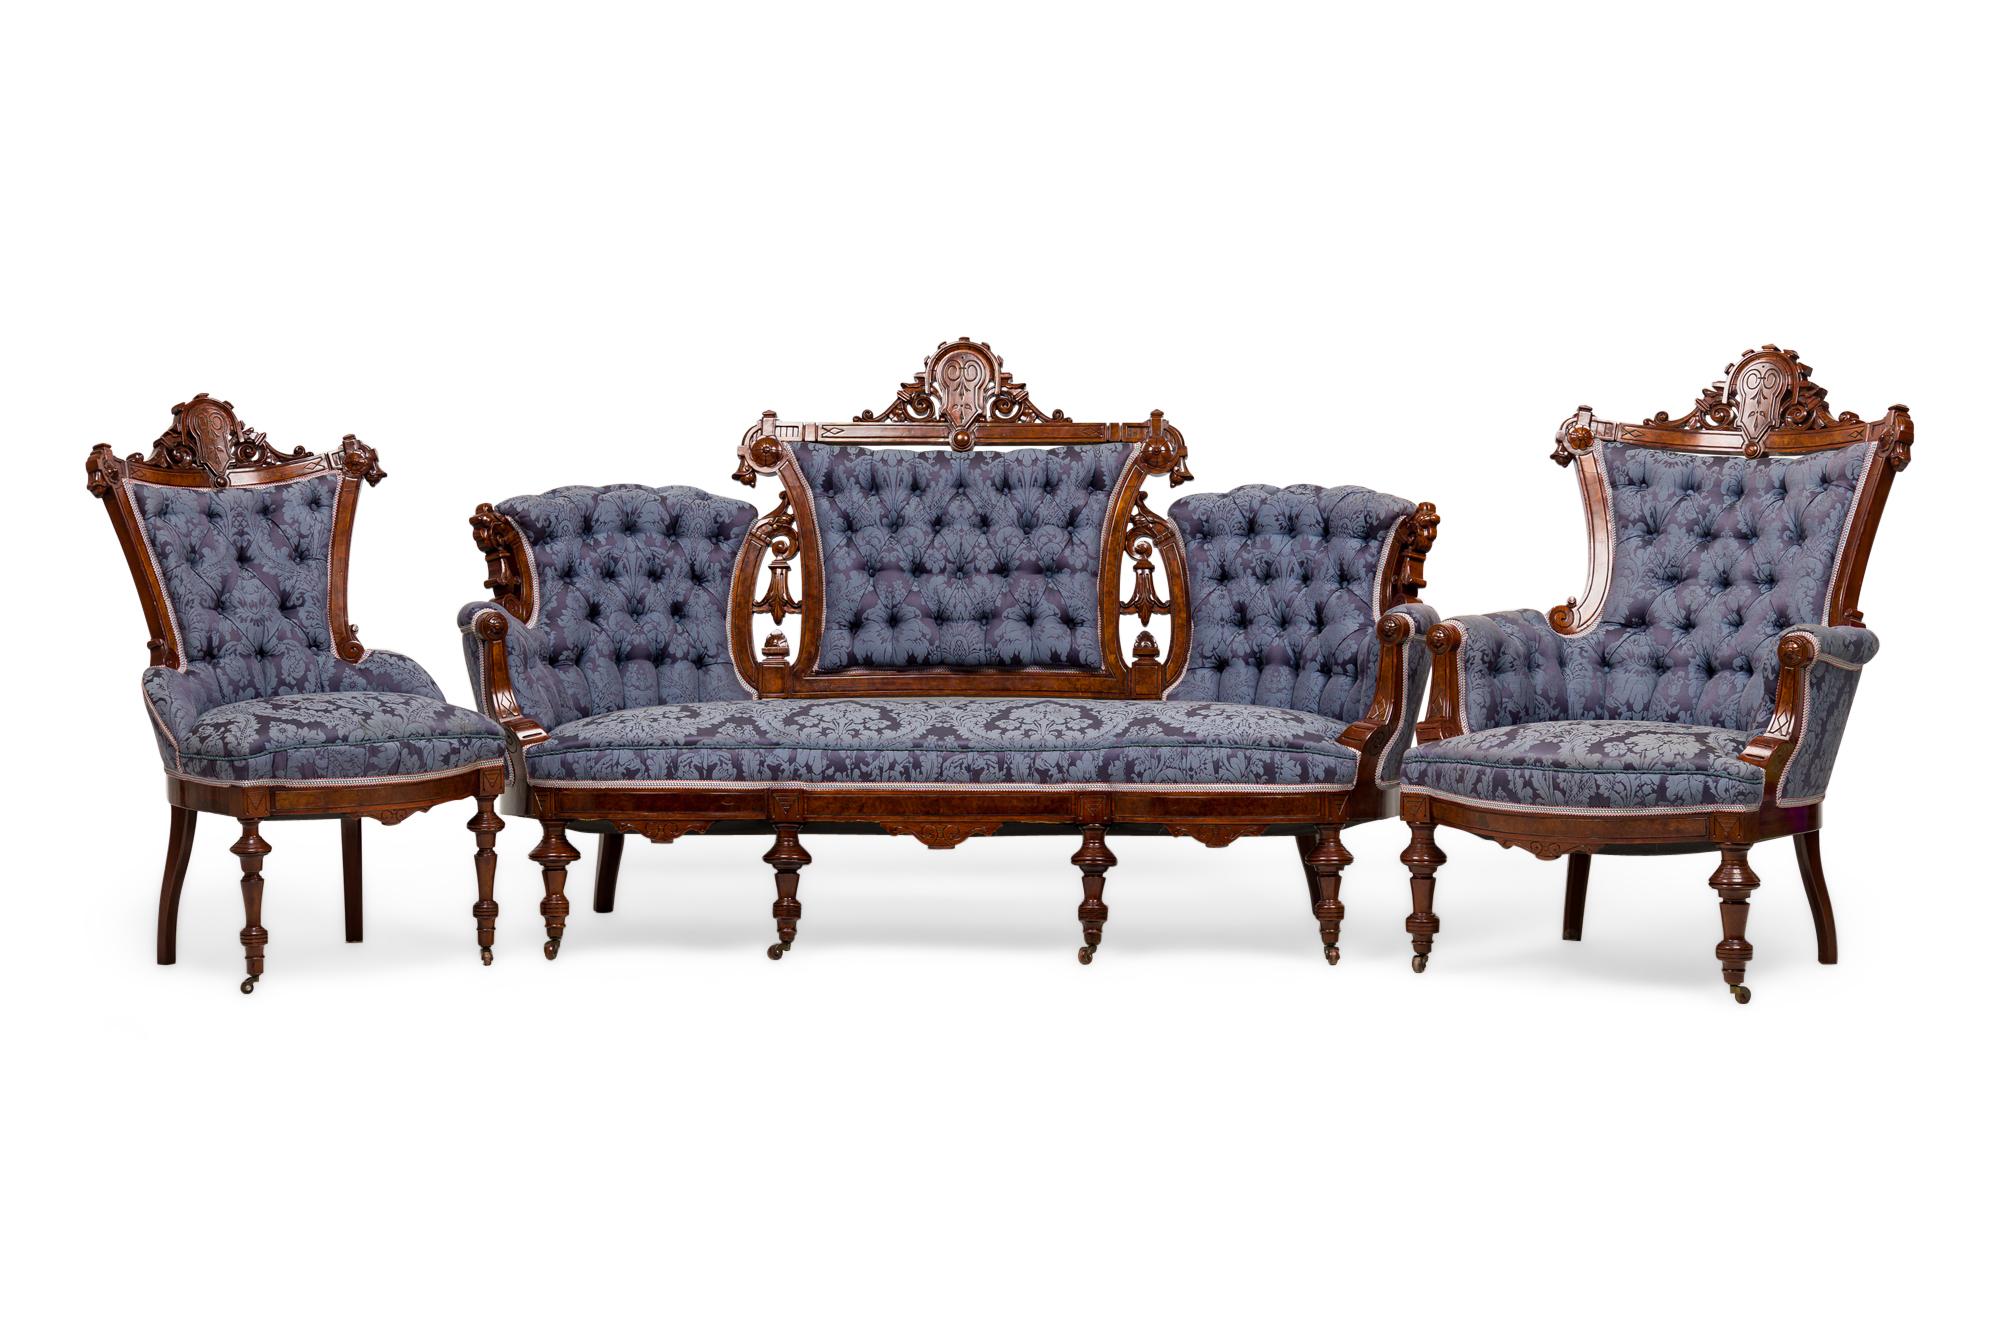 Ensemble salon victorien américain de 6 pièces comprenant un canapé, un fauteuil et 4 chaises d'appoint avec des cadres en acajou sculpté présentant des frontons à crête et des pieds tournés, recouverts d'un damas bleu à deux tons avec un motif de